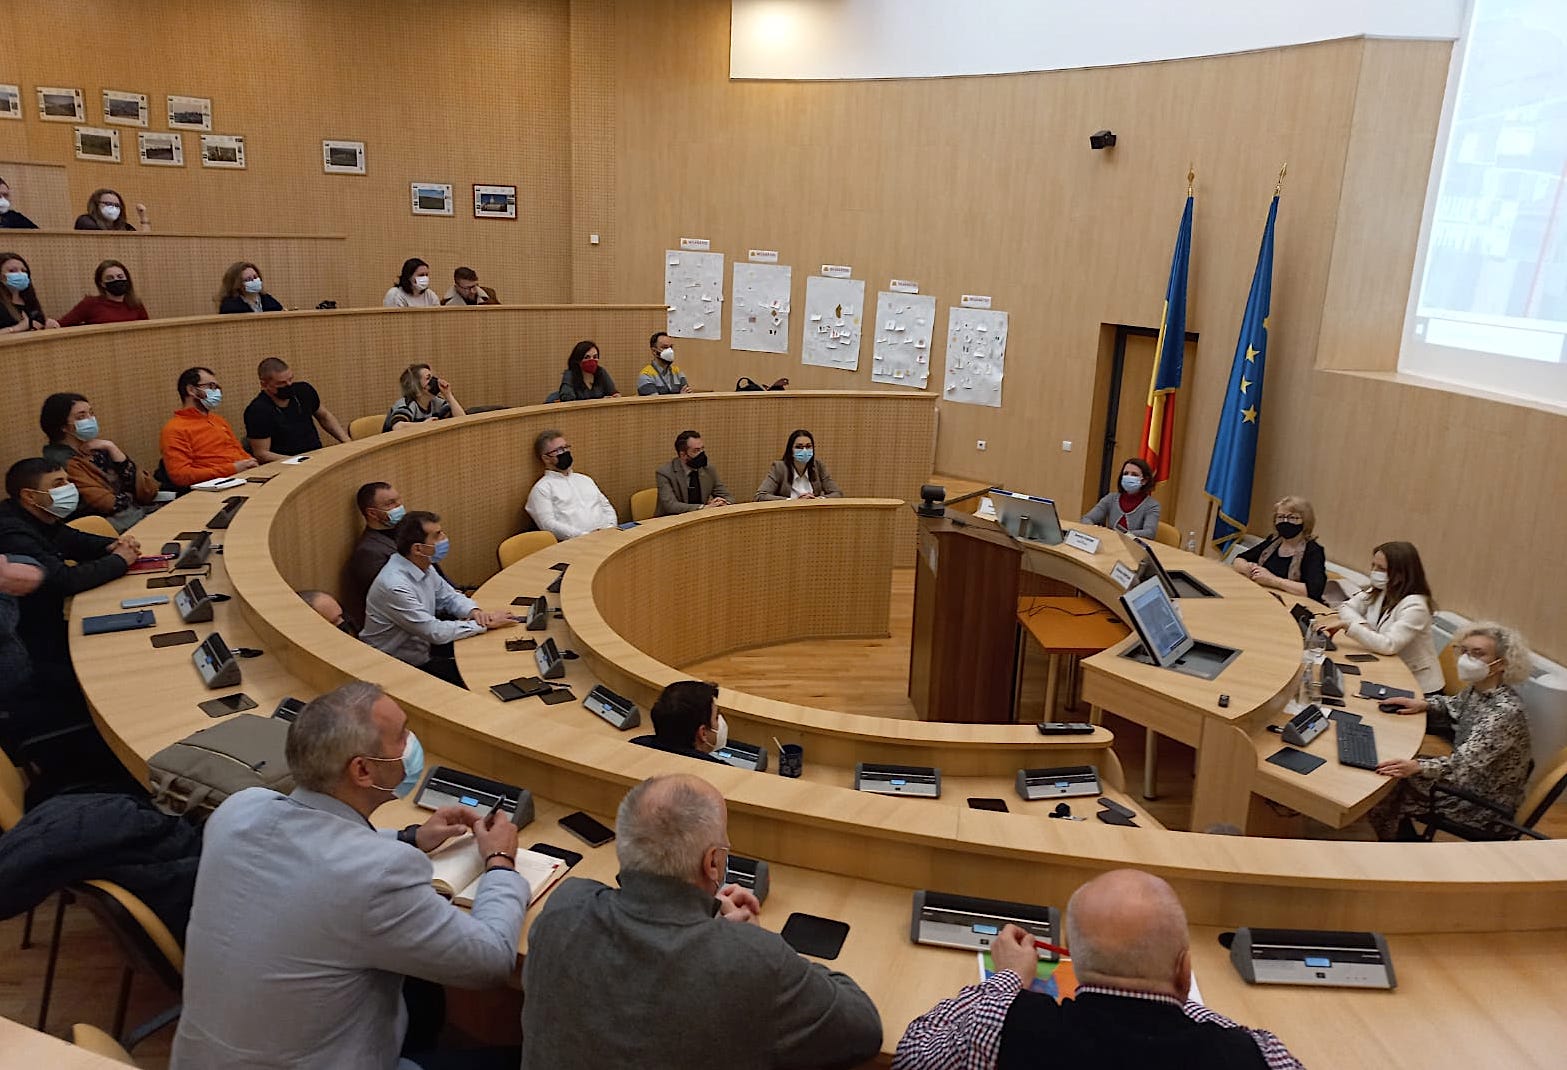 Proiectul centurii-sud, cerut a fi modificat. Pentru prima dată, primarii din jurul Sibiului s-au întâlnit să își armonizeze PUG-urile